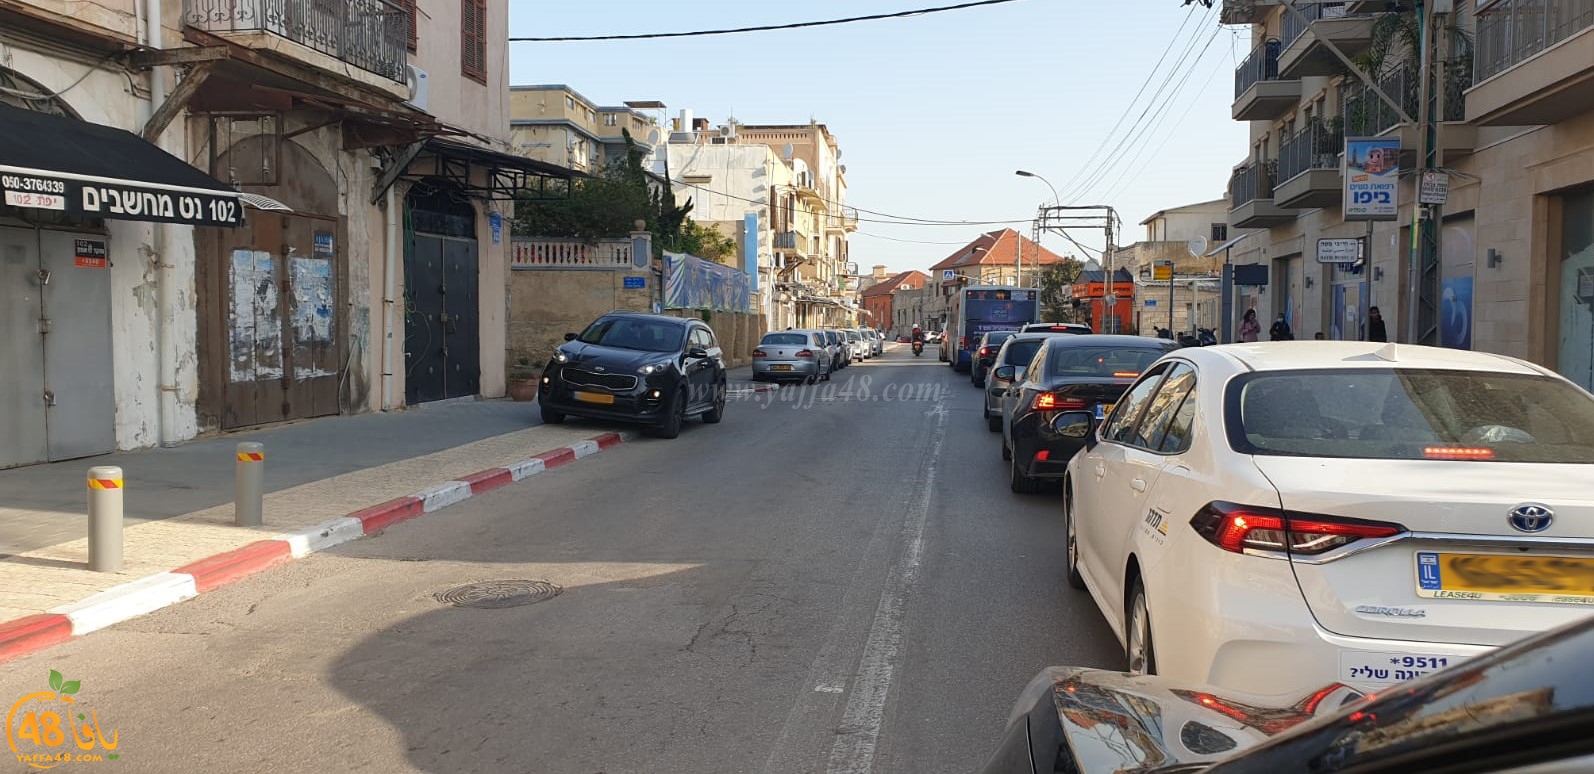 يافا: ازدحامات مرورية صباحية في شارع ييفت تحوّل الحياة الى كابوس